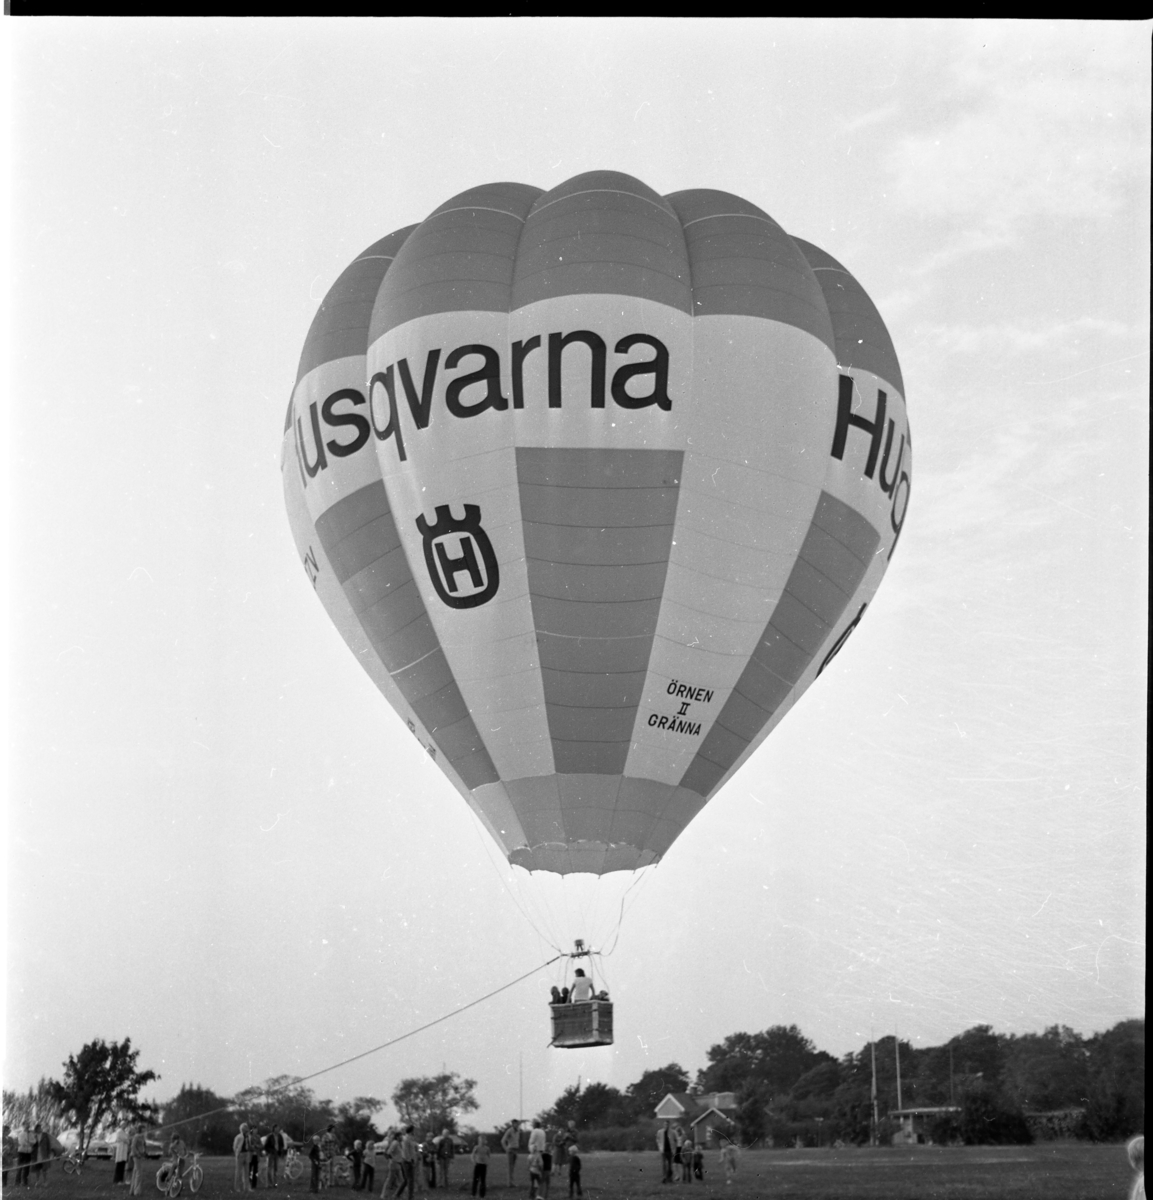 En förankrad luftballong över en gräsplan. Det är ballongen Örnen II från Gränna med reklam för Husqvarna.